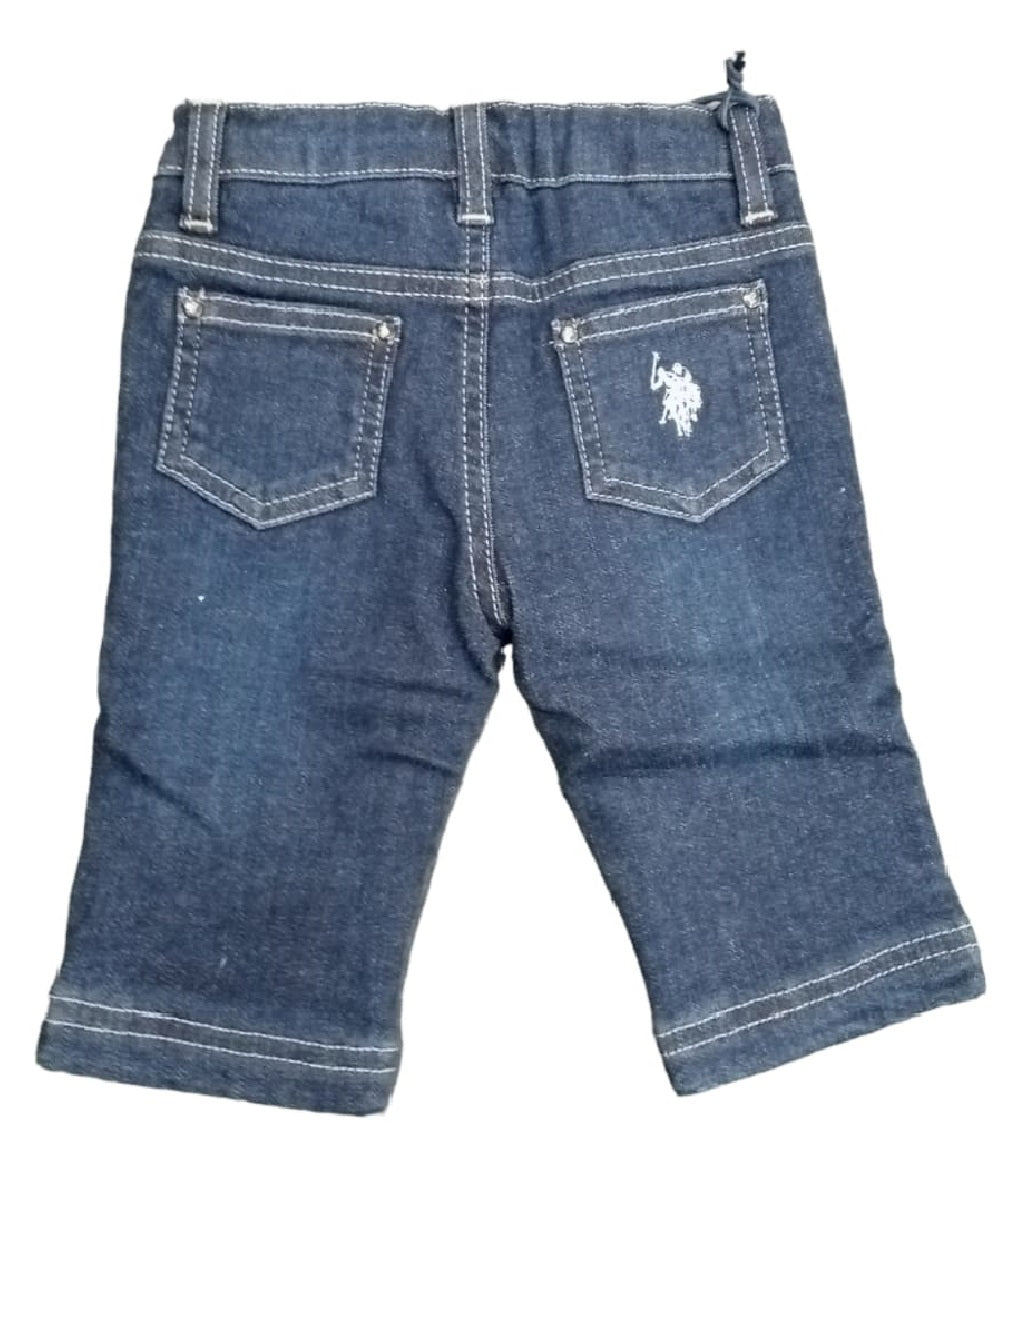 Jeans U.S. POLO ASSN. da bambino lavaggio scuro con cinque tasche